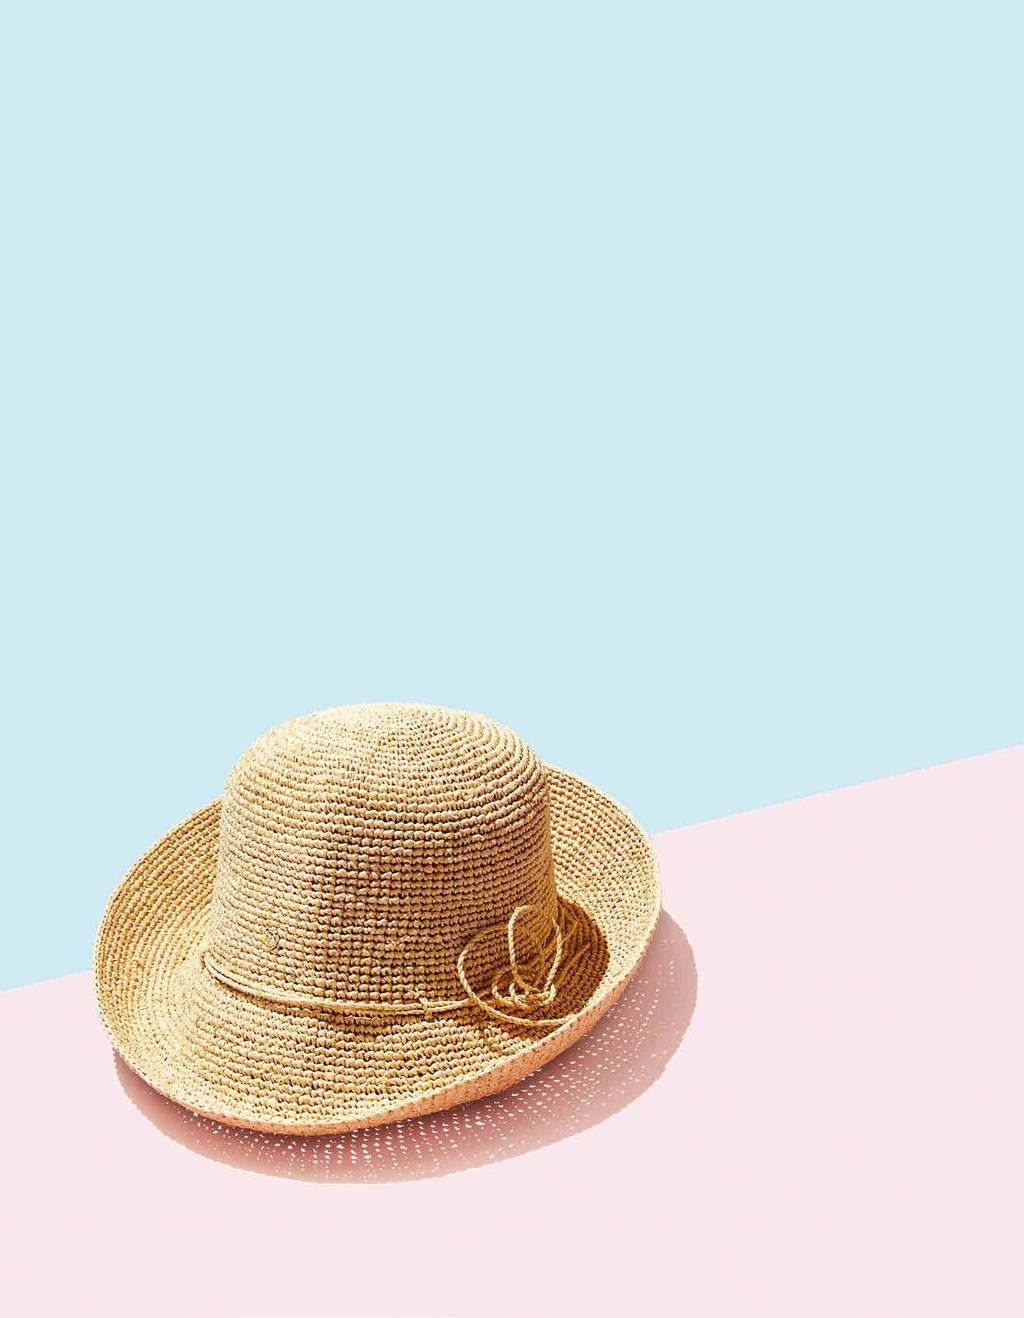 眩しい太陽の光にだんだんと軽くなる装い 鏡の中の姿が少し物足りないと思ったらラフィア帽子でさわやかな魅力を加えよう ヘレンカミンスキーのELDORA8は柔らかな曲線と縁が巻き上がった短いひさしが魅力のラフィア帽子 クラシックな雰囲気がどんな装いにも似合いおしゃれな雰囲気を演出する